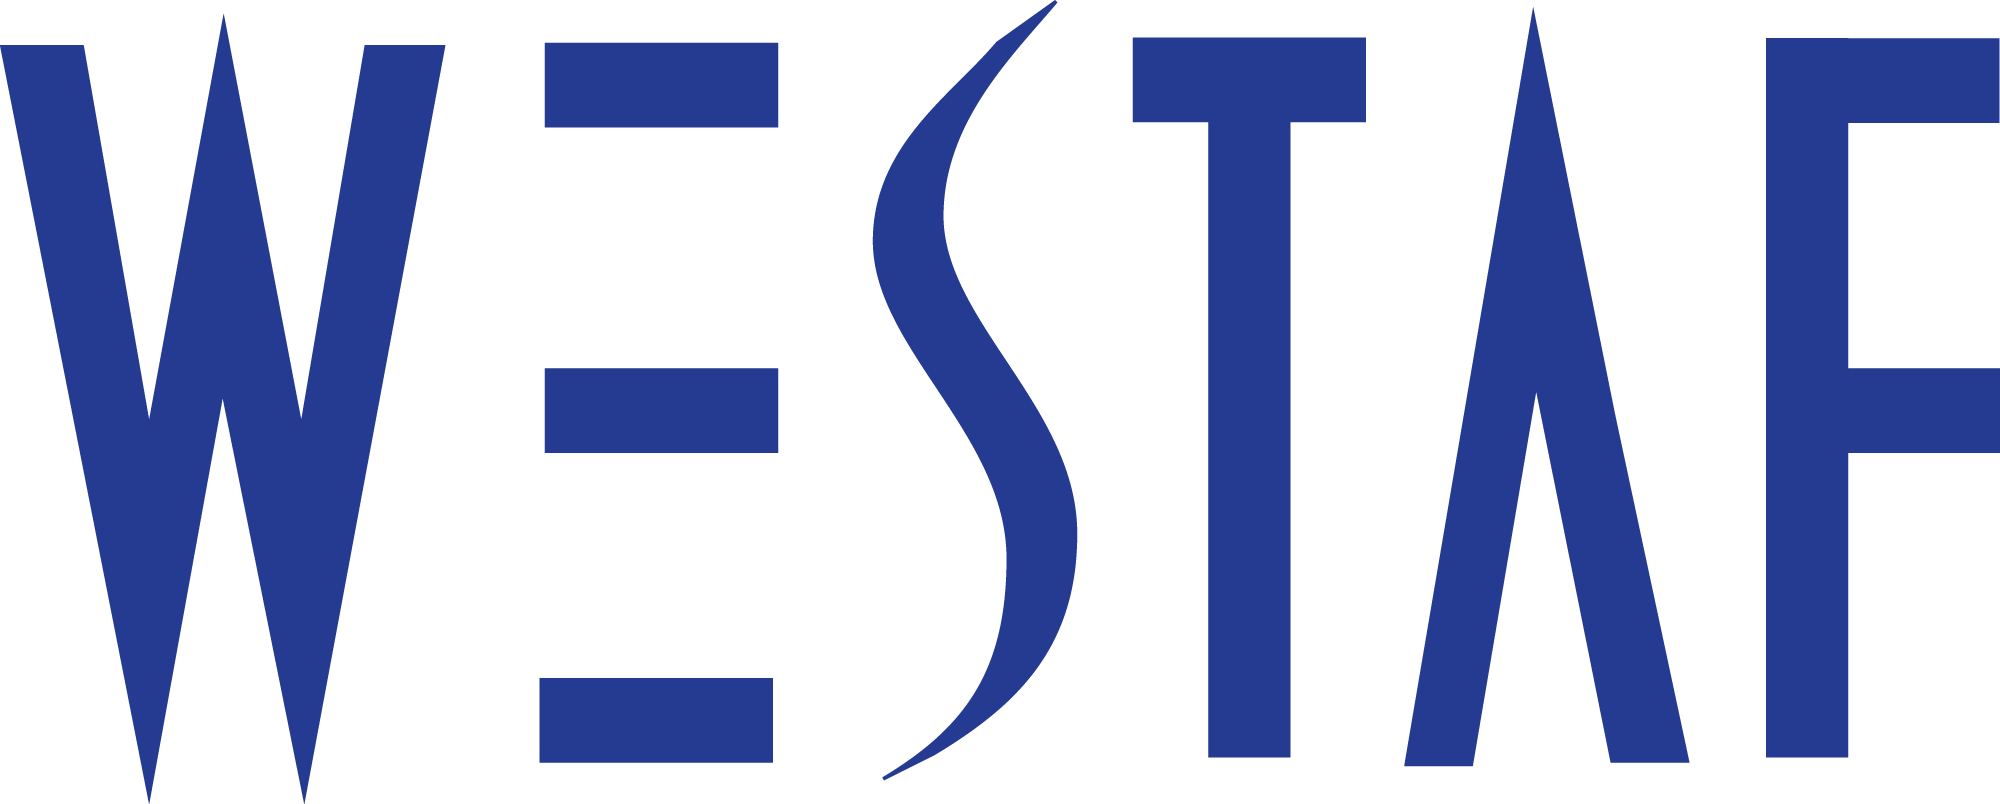 westaf logo transparent